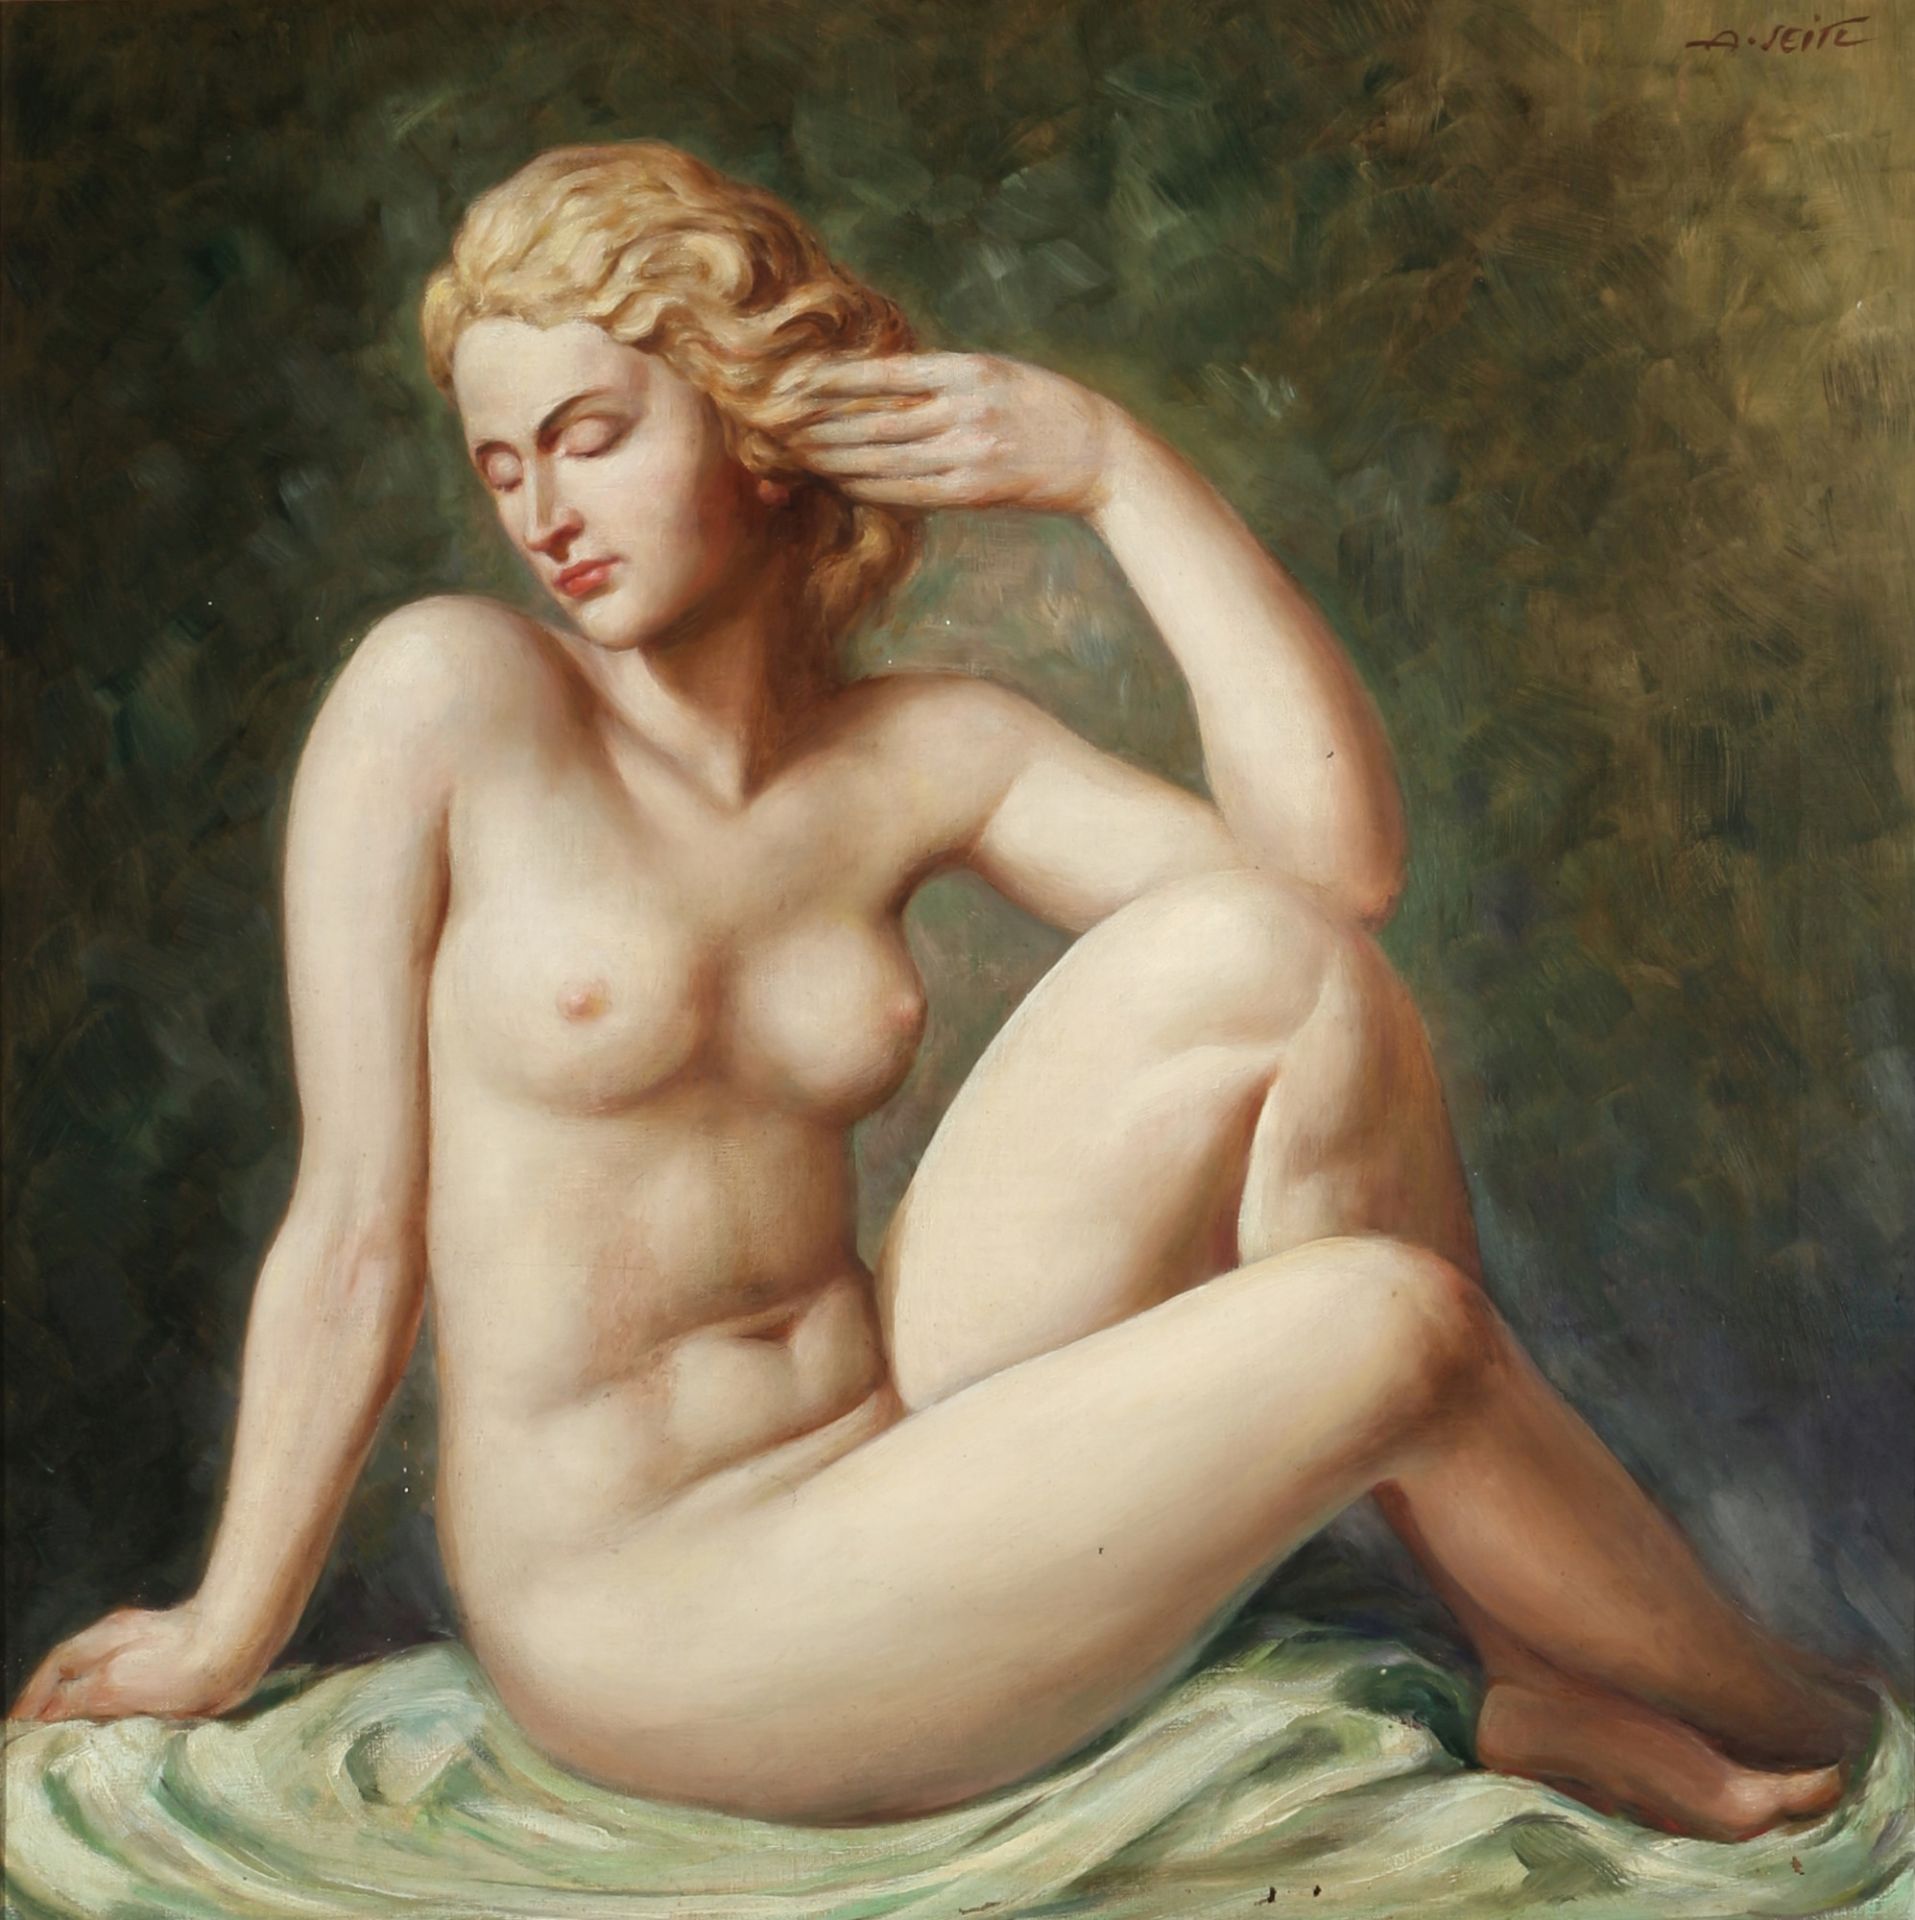 A. Seitl um 1900, sitzender Frauenakt, sitting female nude act ca. 1900,